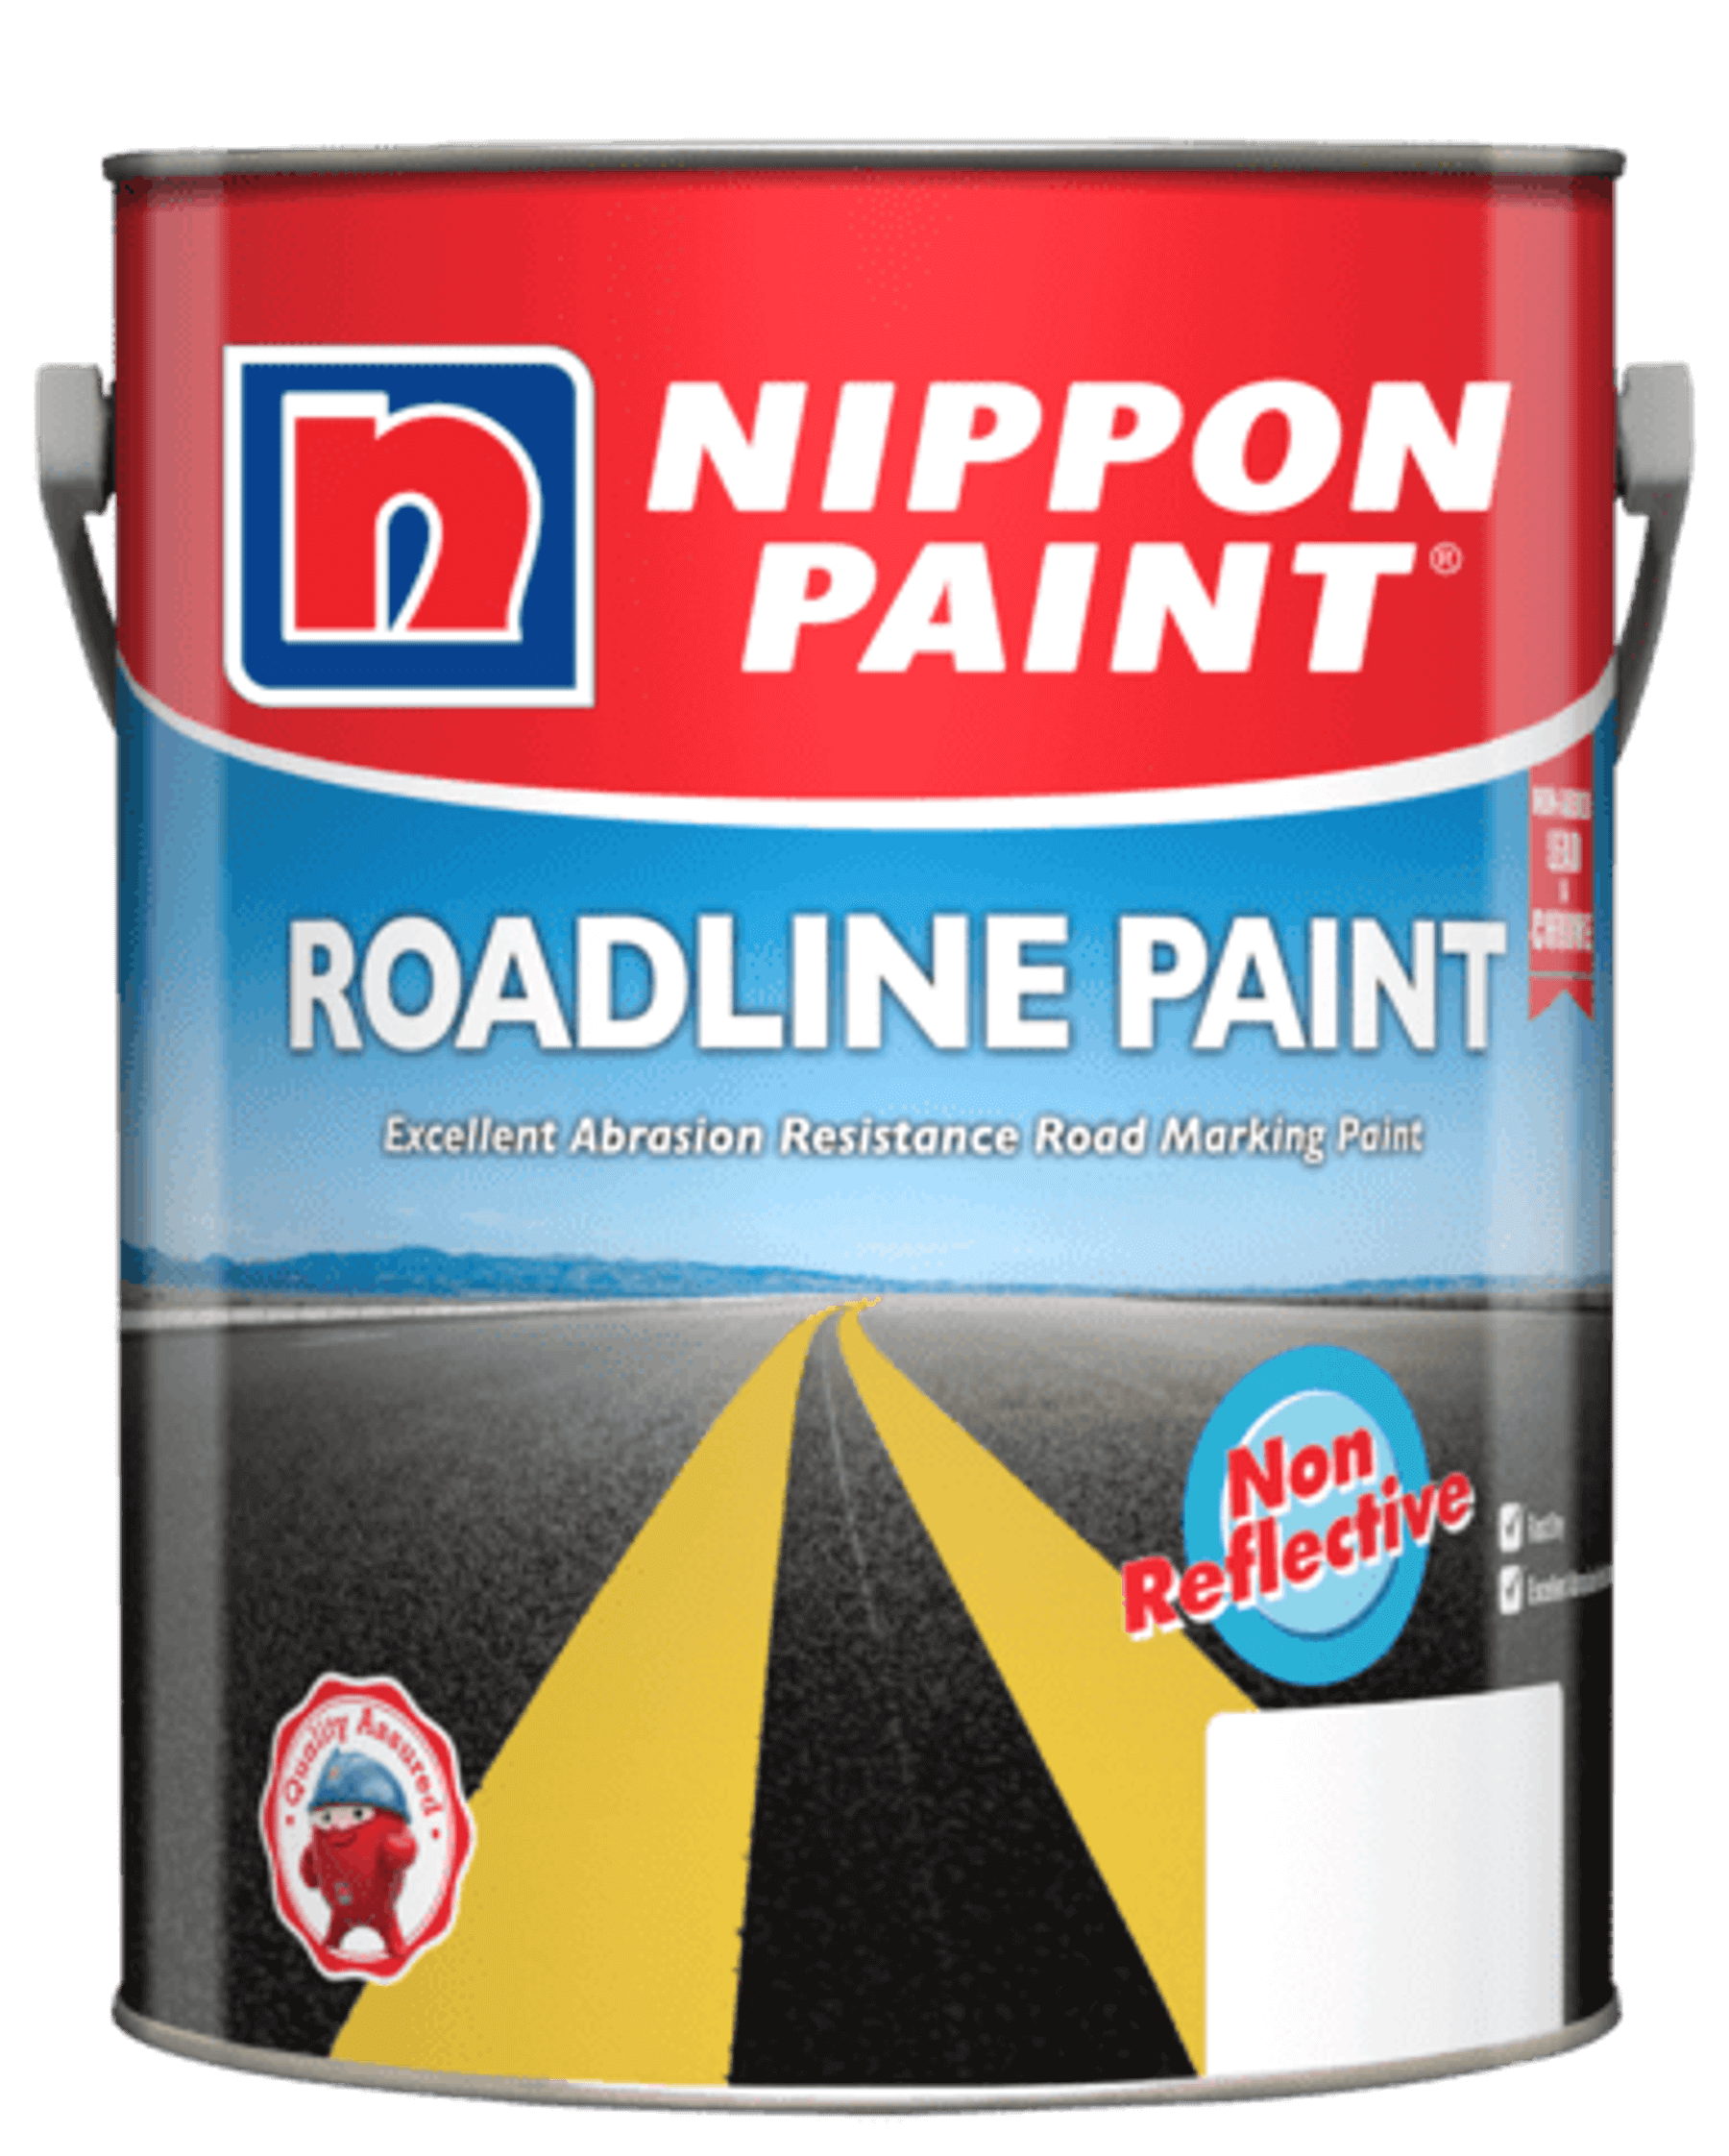 Roadline Paint (Non-Reflective)